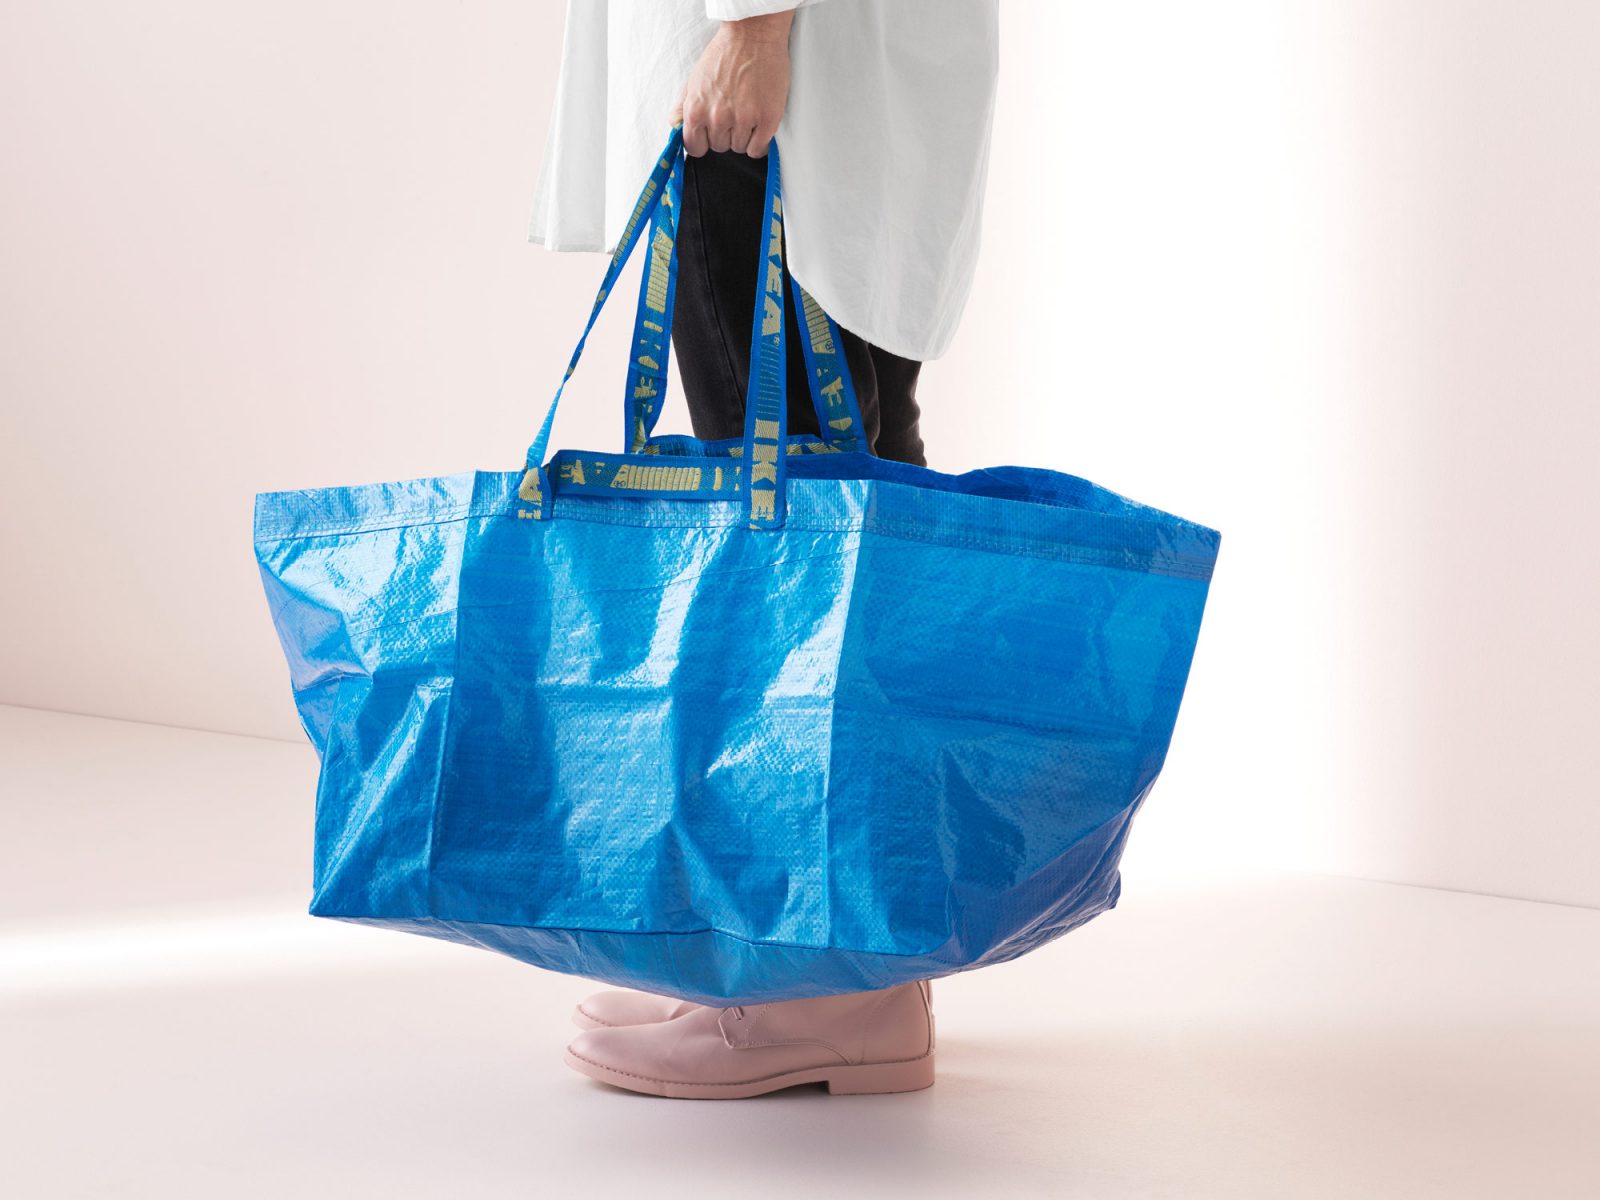 Une personne tient un sac FRAKTA bleu. Seule la partie inférieure du corps est visible.